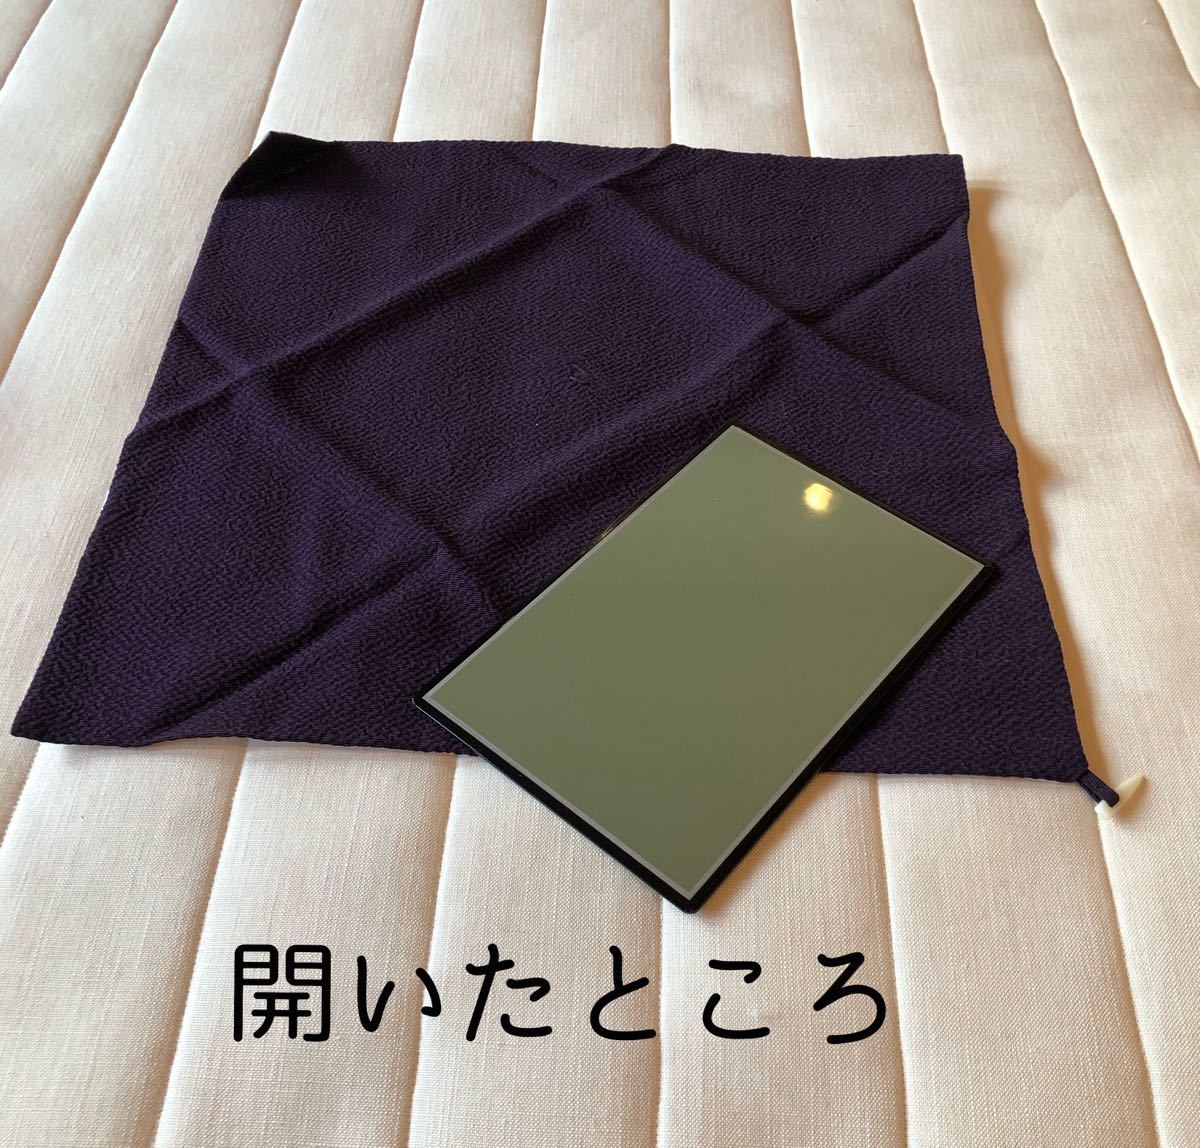 IN3] fukusa pcs attaching fukusa ceremonial occasions purple color tree box 